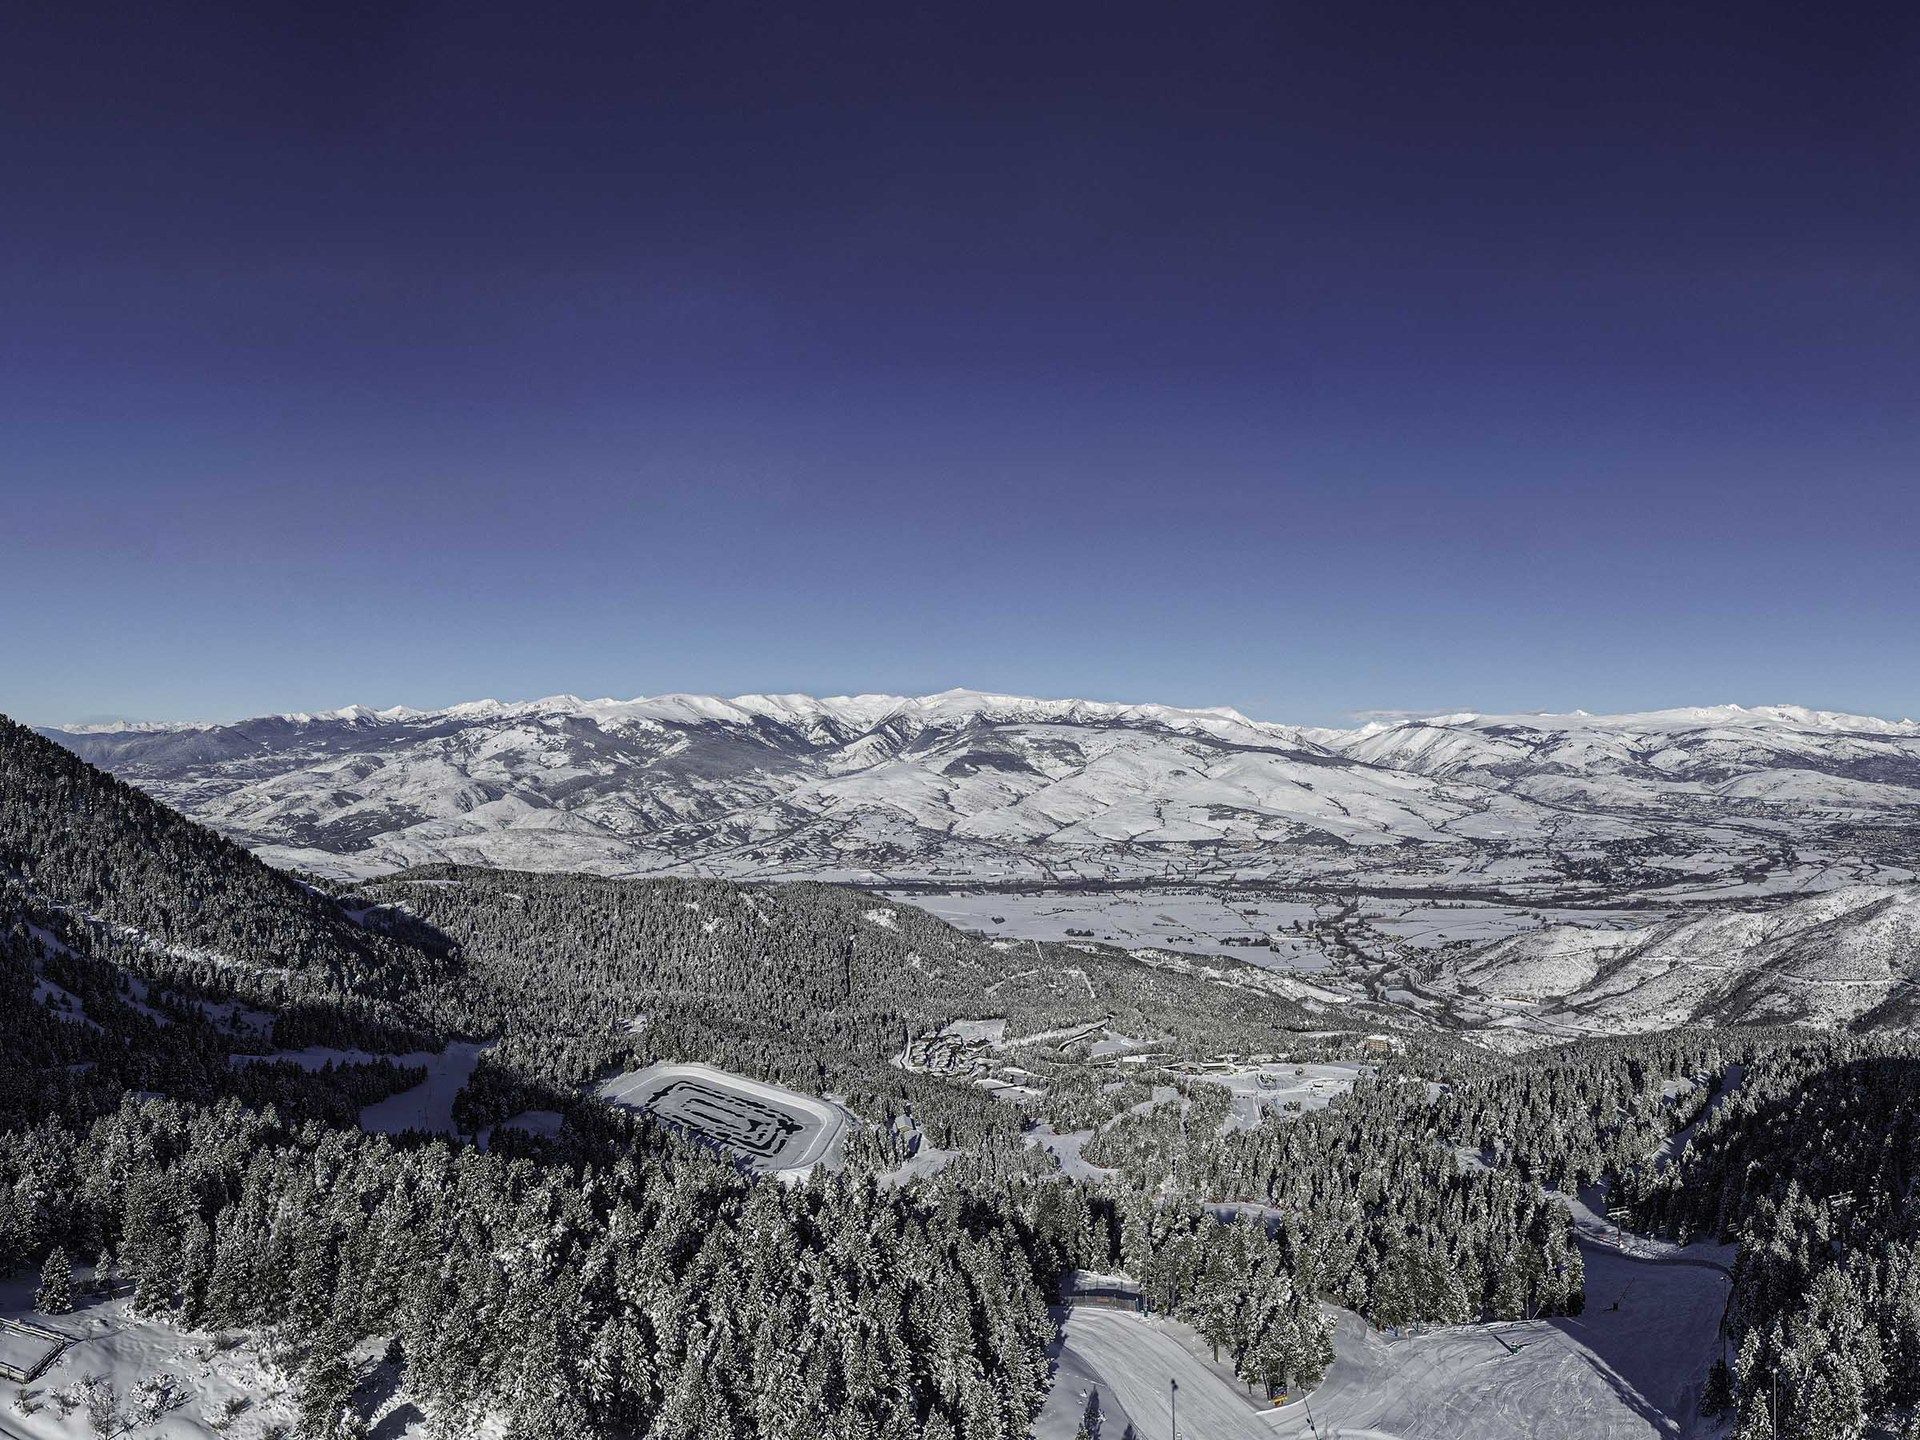 Imágenes de Masella en temporada de esquí con nieve